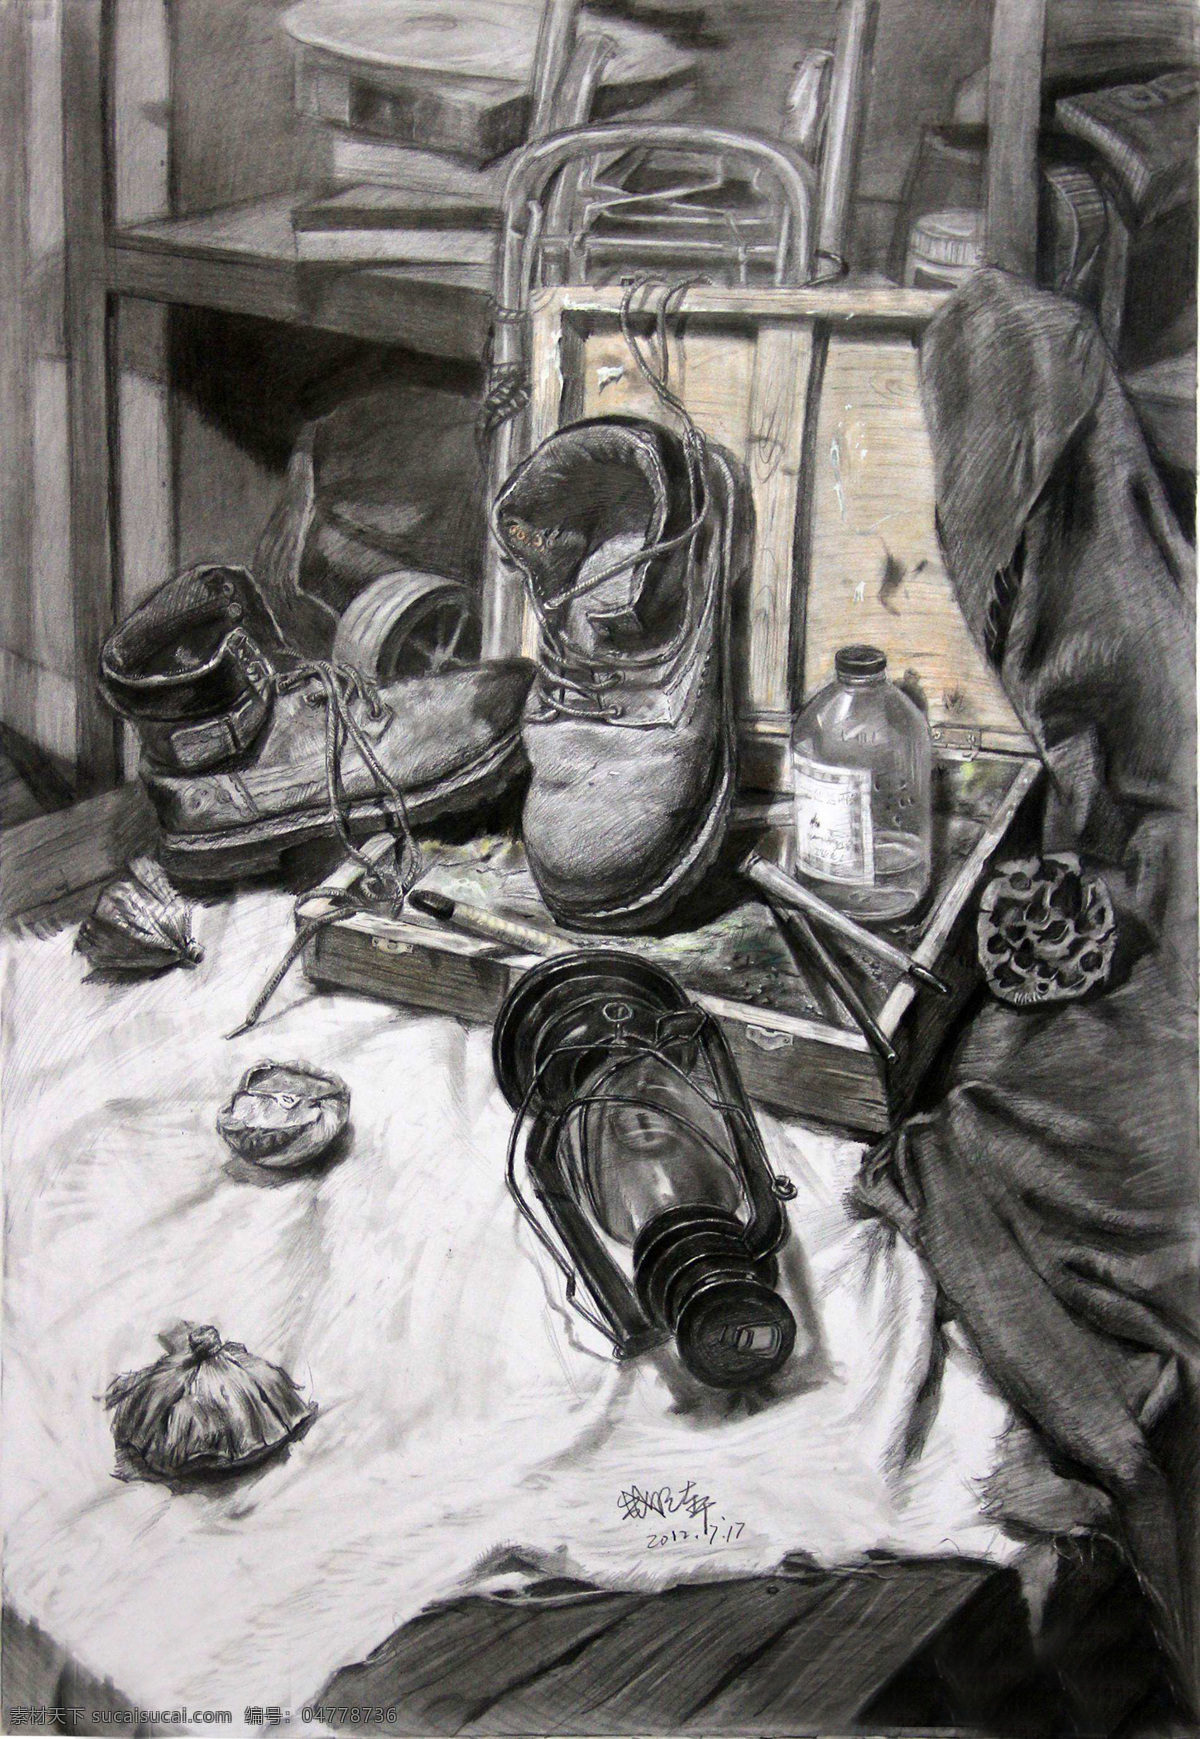 素描 素描静物 静物素描 素描作品 鞋子 瓶子 艺术绘画 文化艺术 绘画书法